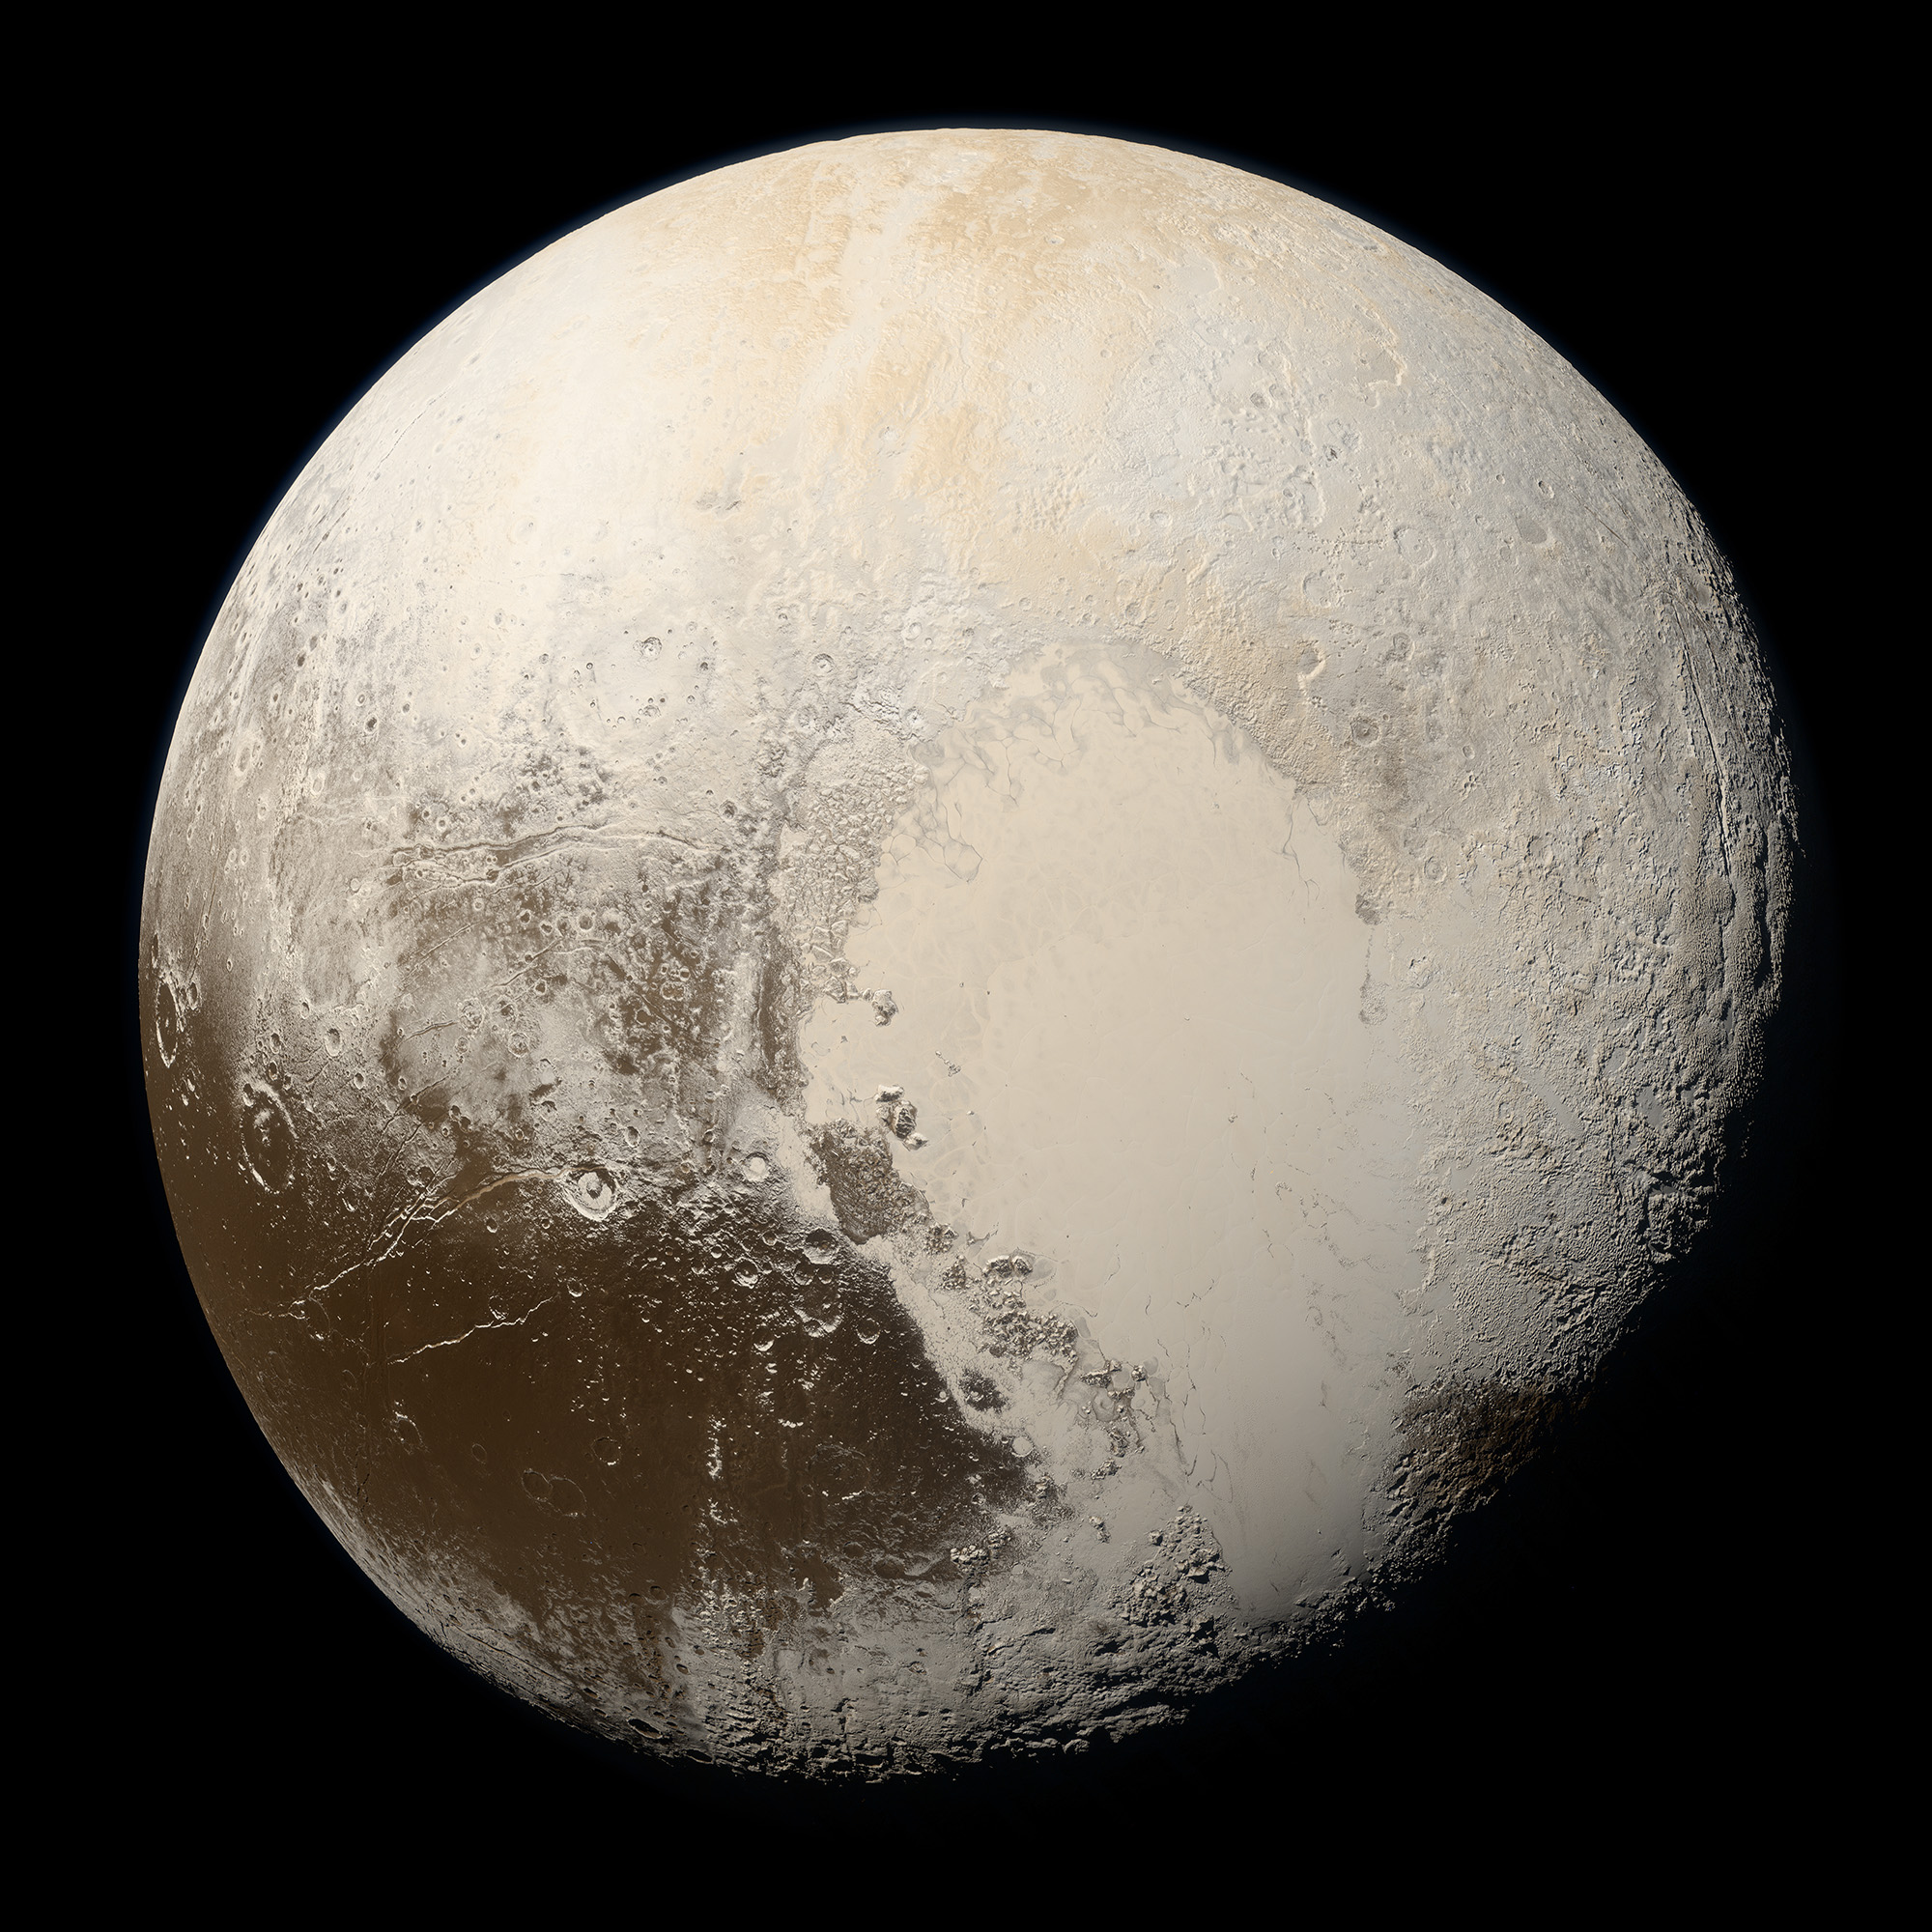 Плутон в природних кольорах. Знімок отриманий космічним апаратом «New Horizons» 14 липня 2015 року з відстані 35 445 кілометрів. Credit: NASA / Johns Hopkins University Applied Physics Laboratory / Southwest Research Institute / Alex Parker